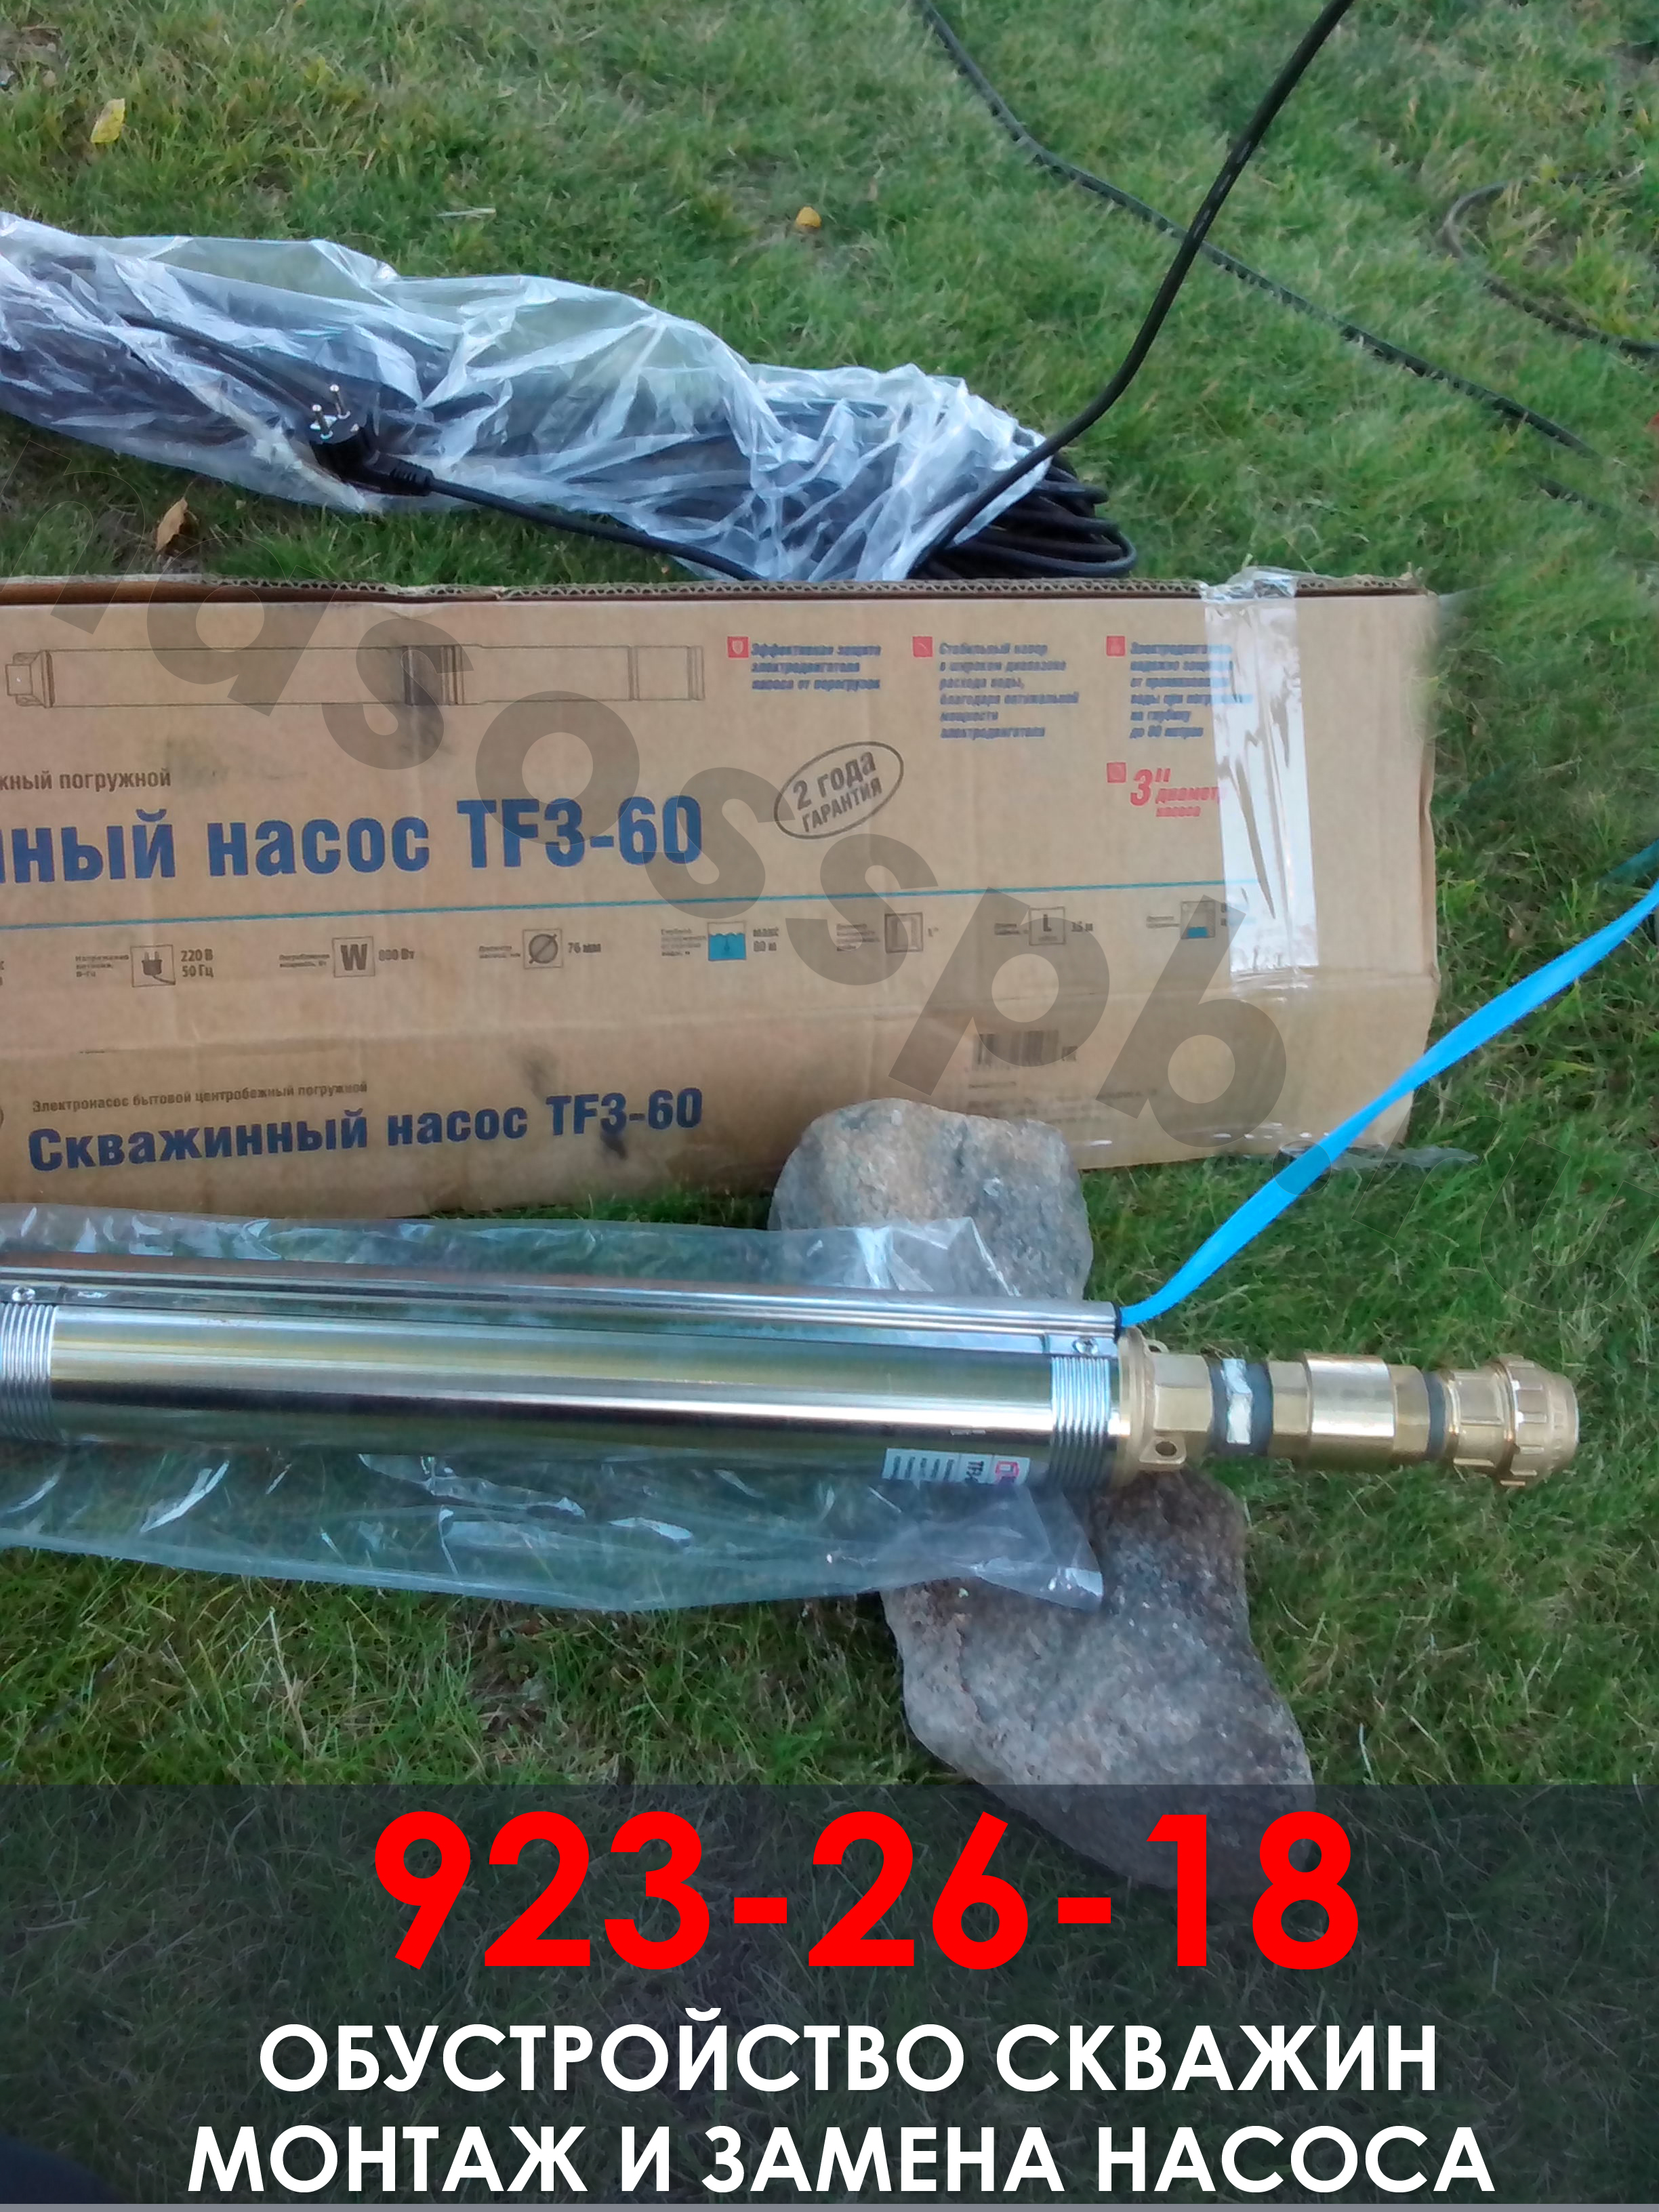 Установка скважинного насоса Беламос тф3-60 в Ключевом